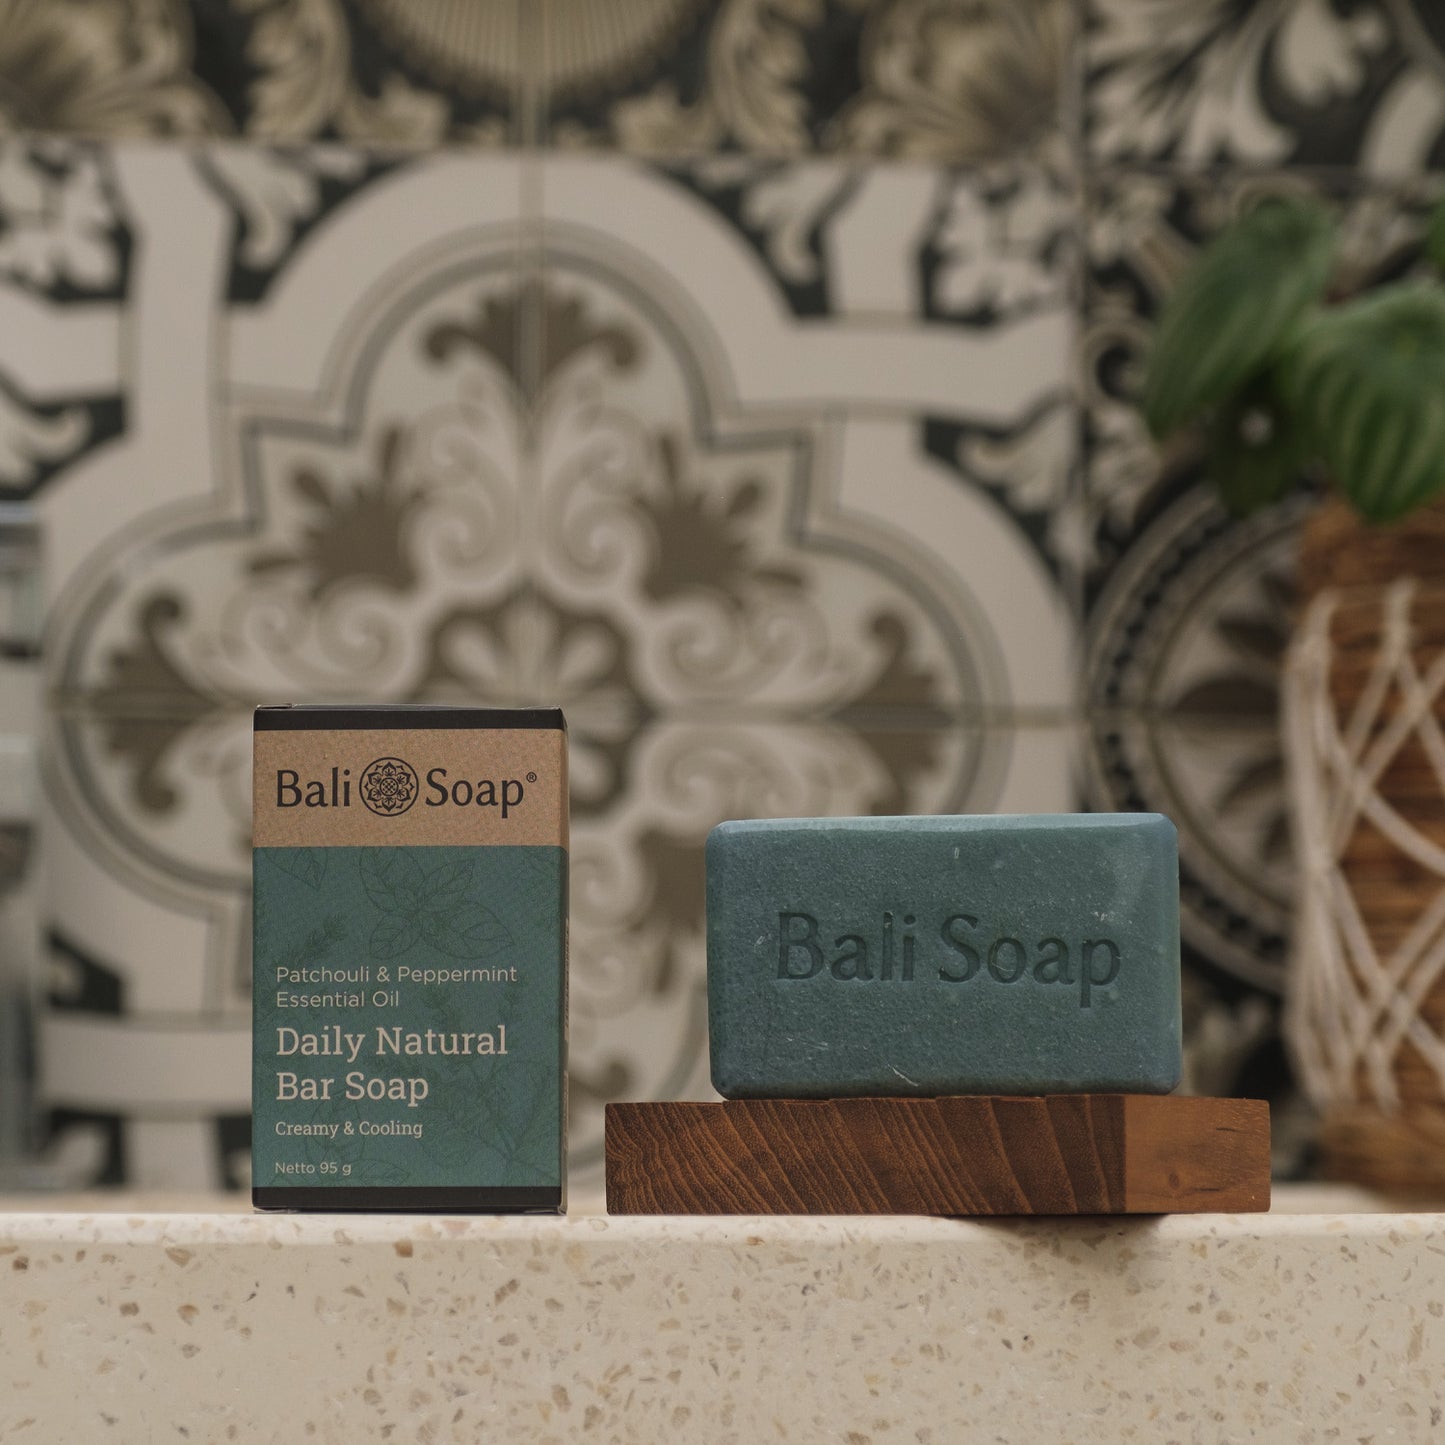 Bali Soap Essential Oil Bar Soap 95g - Patchouli & Peppermint